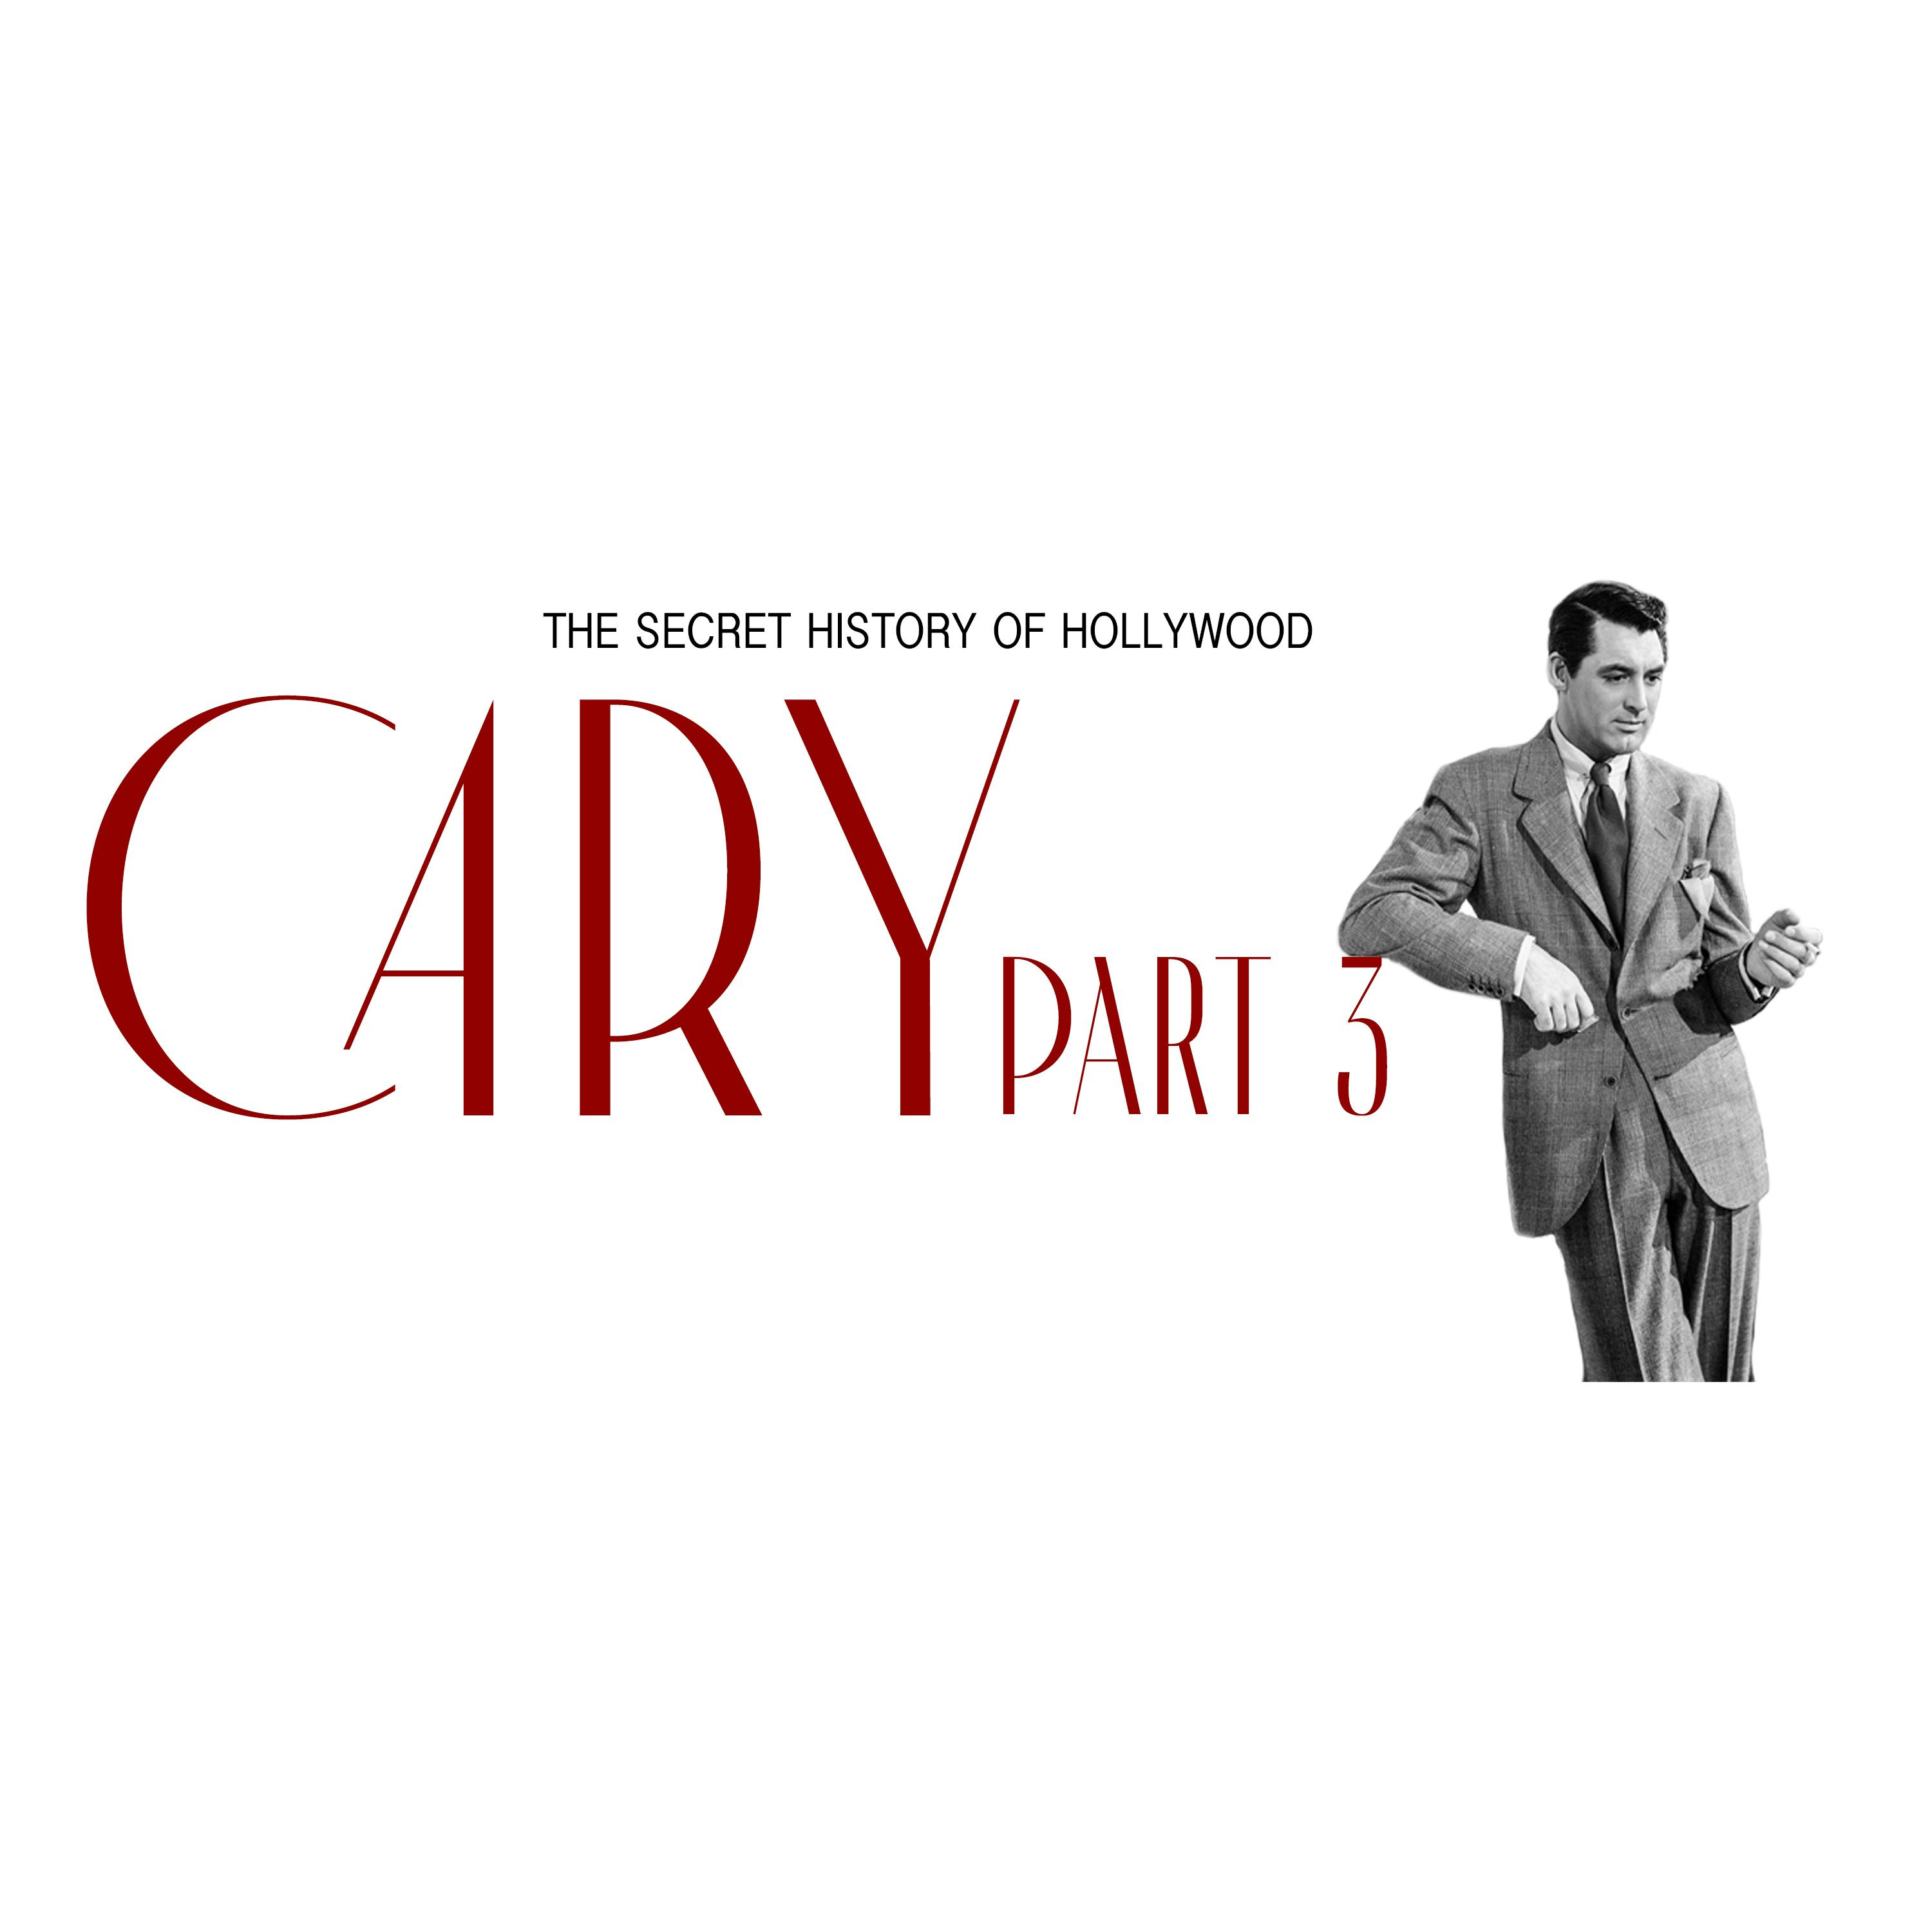 Cary: Part 3 - Vol I